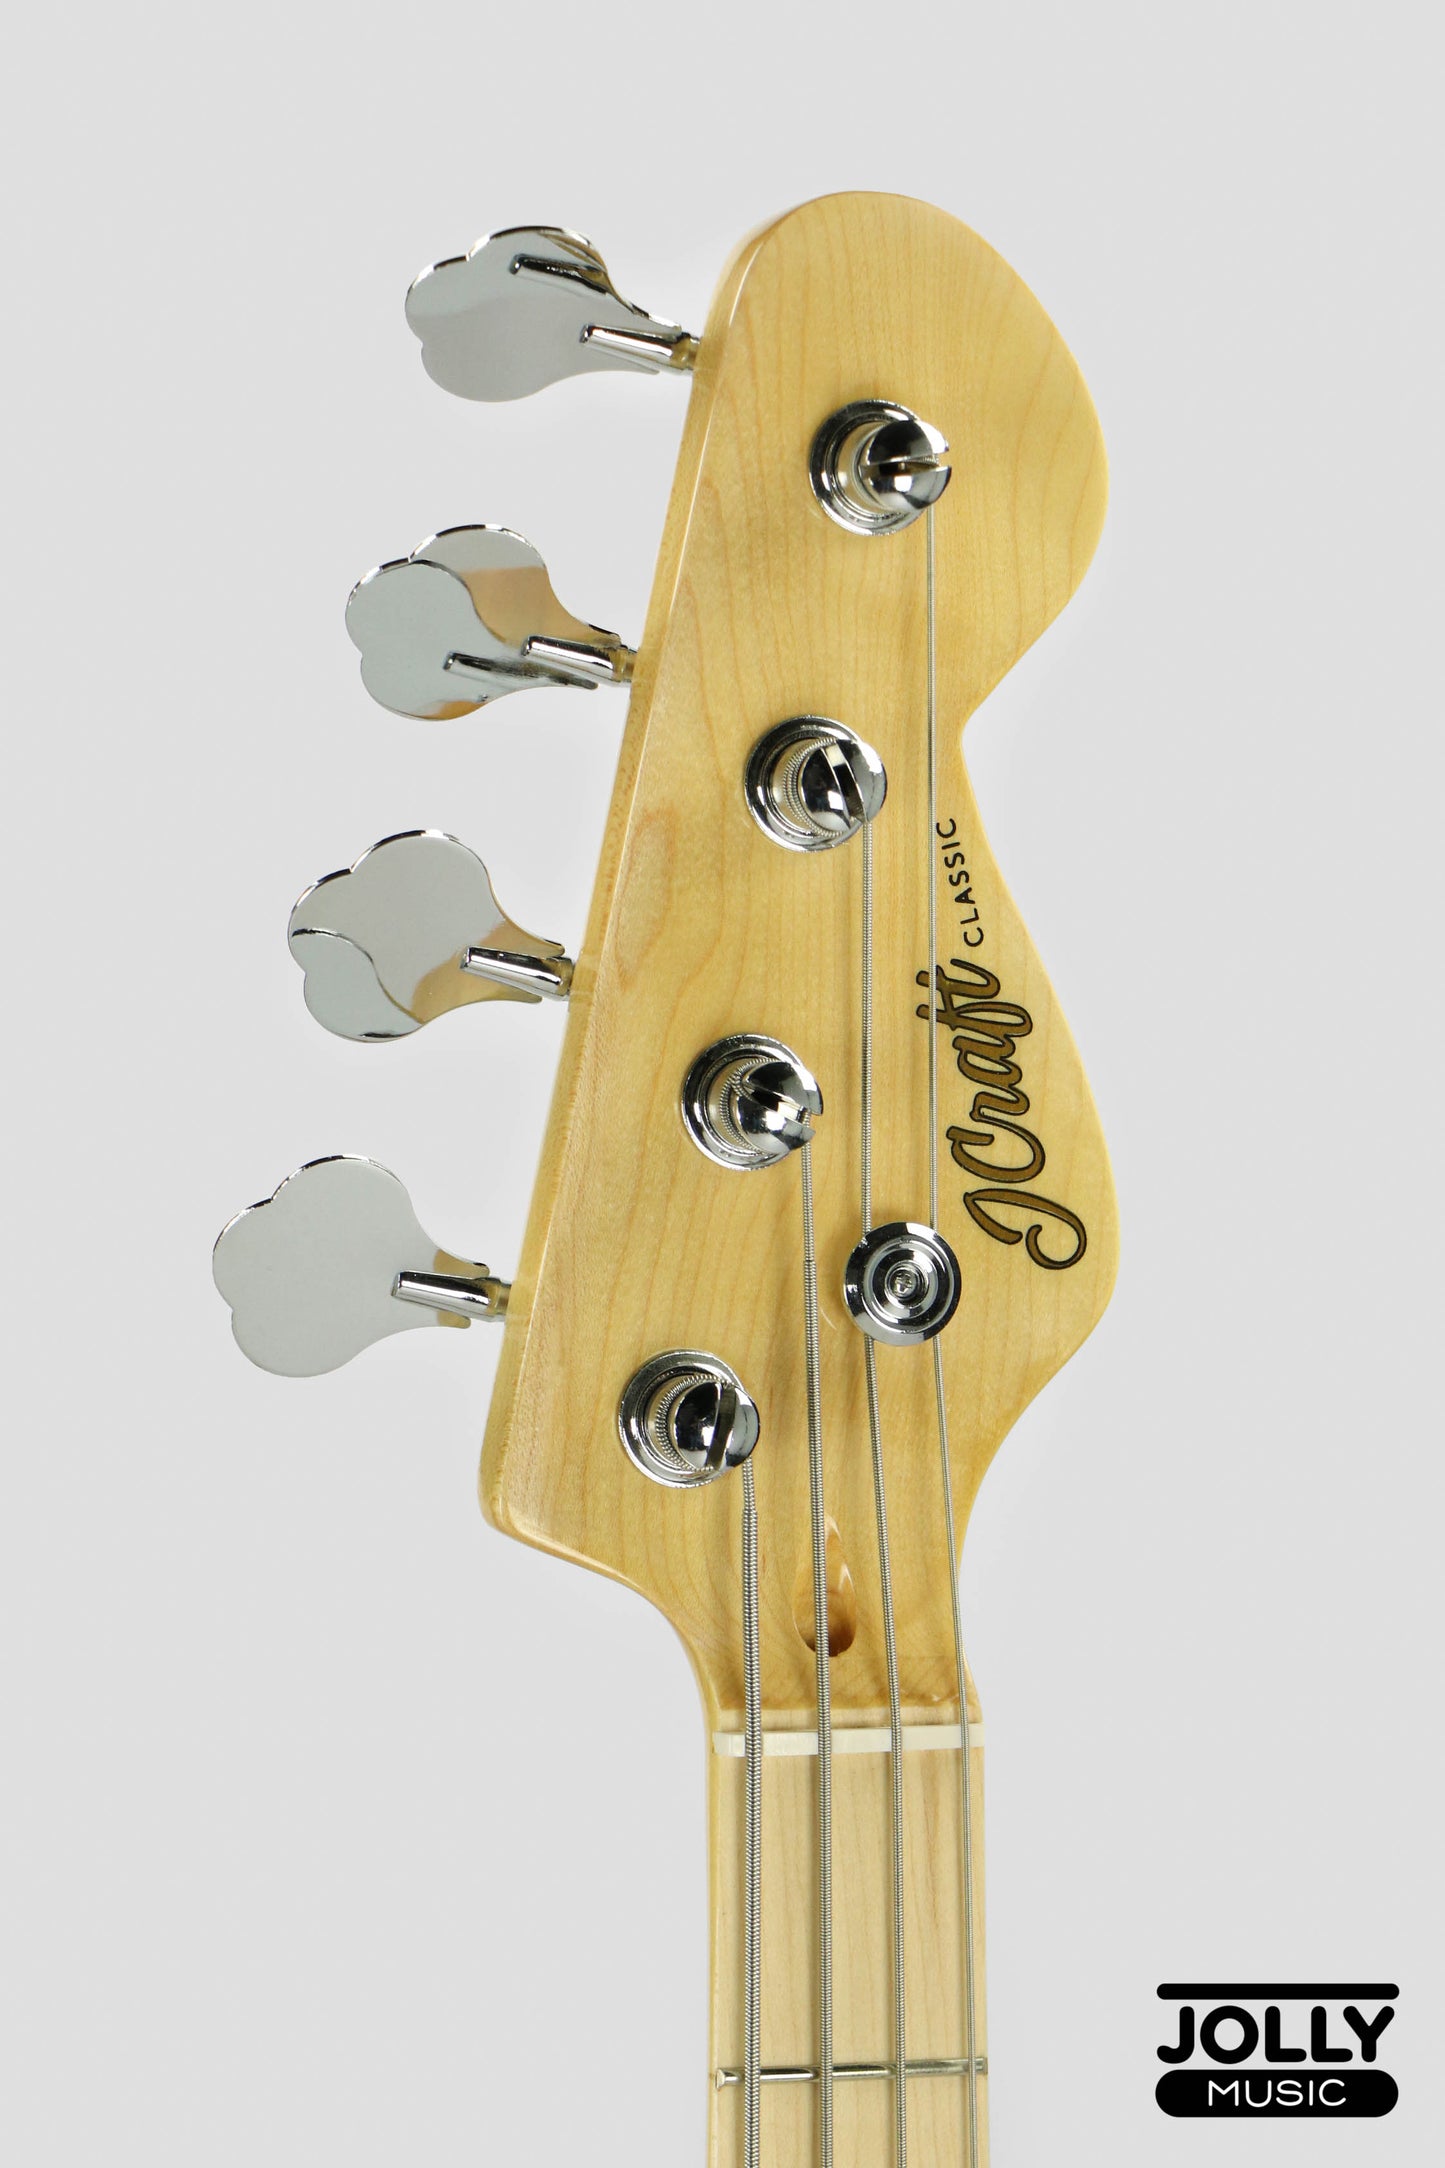 JCraft PB-2 4-String Bass Guitar - Natural